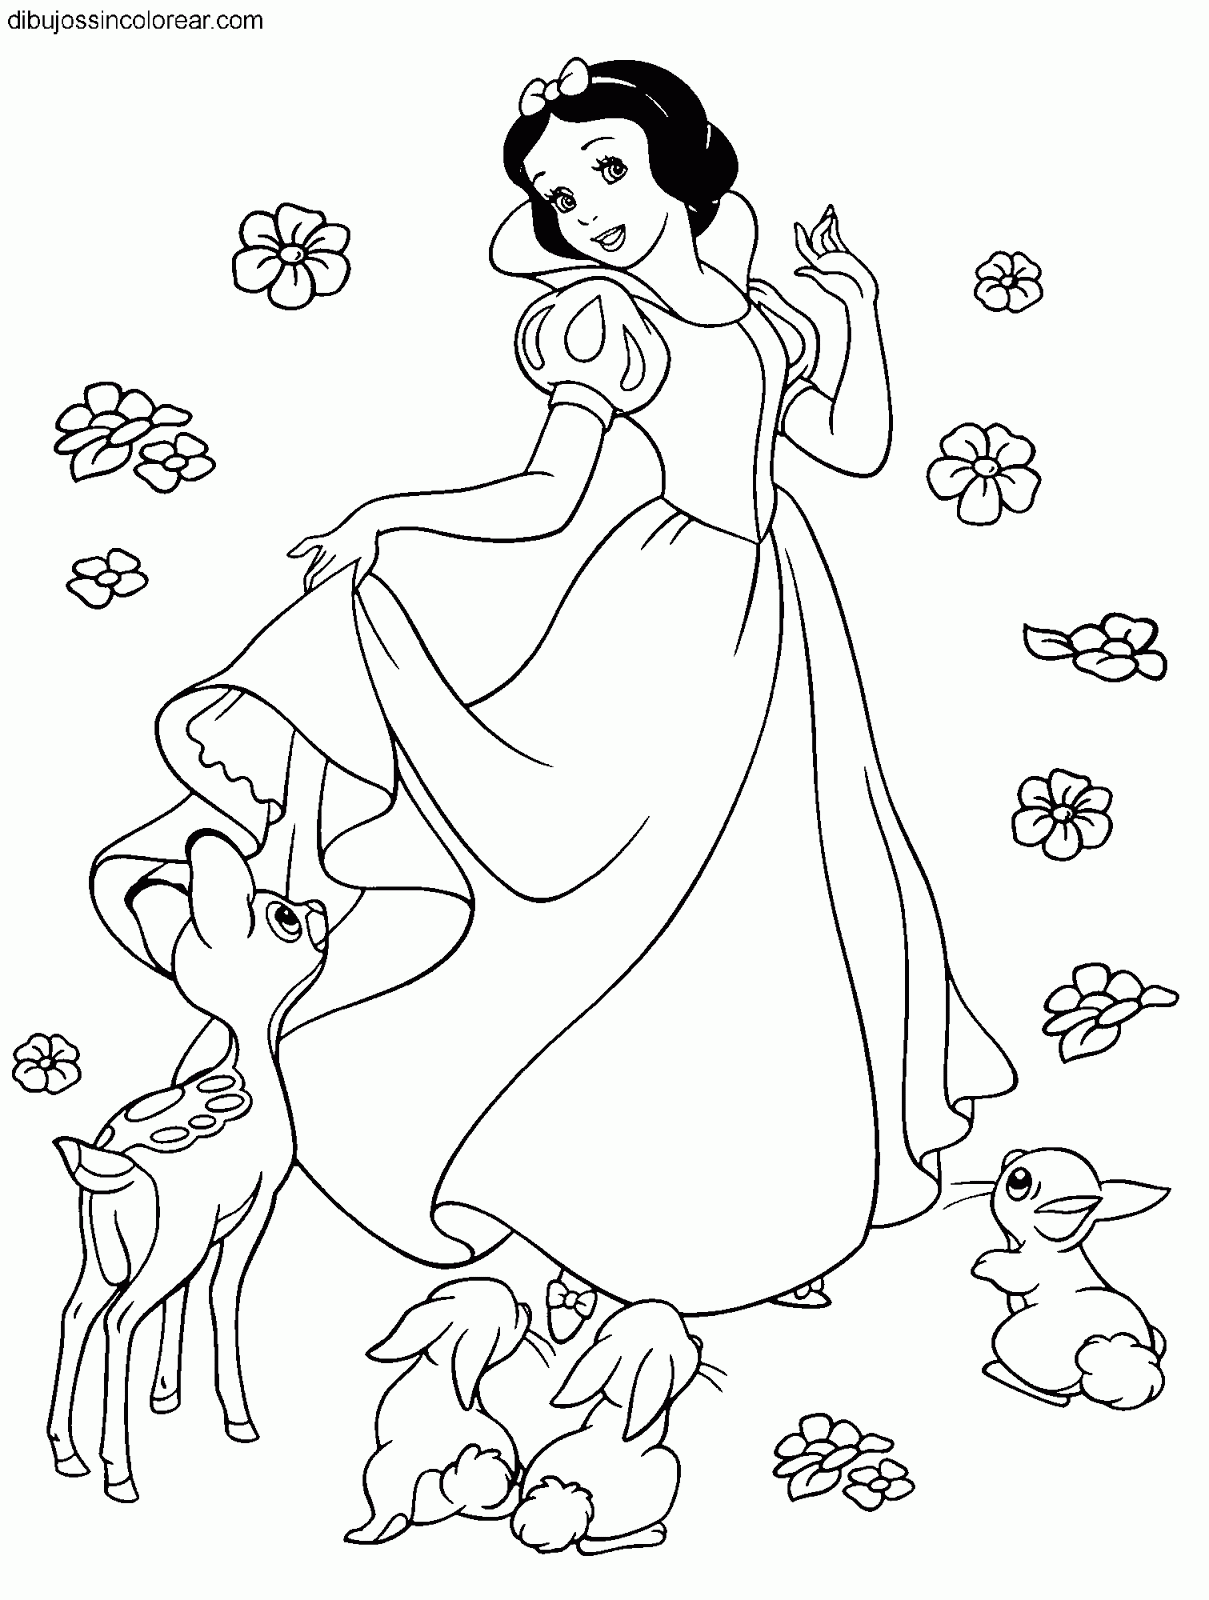 Dibujos Sin Colorear Dibujos De Blancanieves Princesa Disney Para